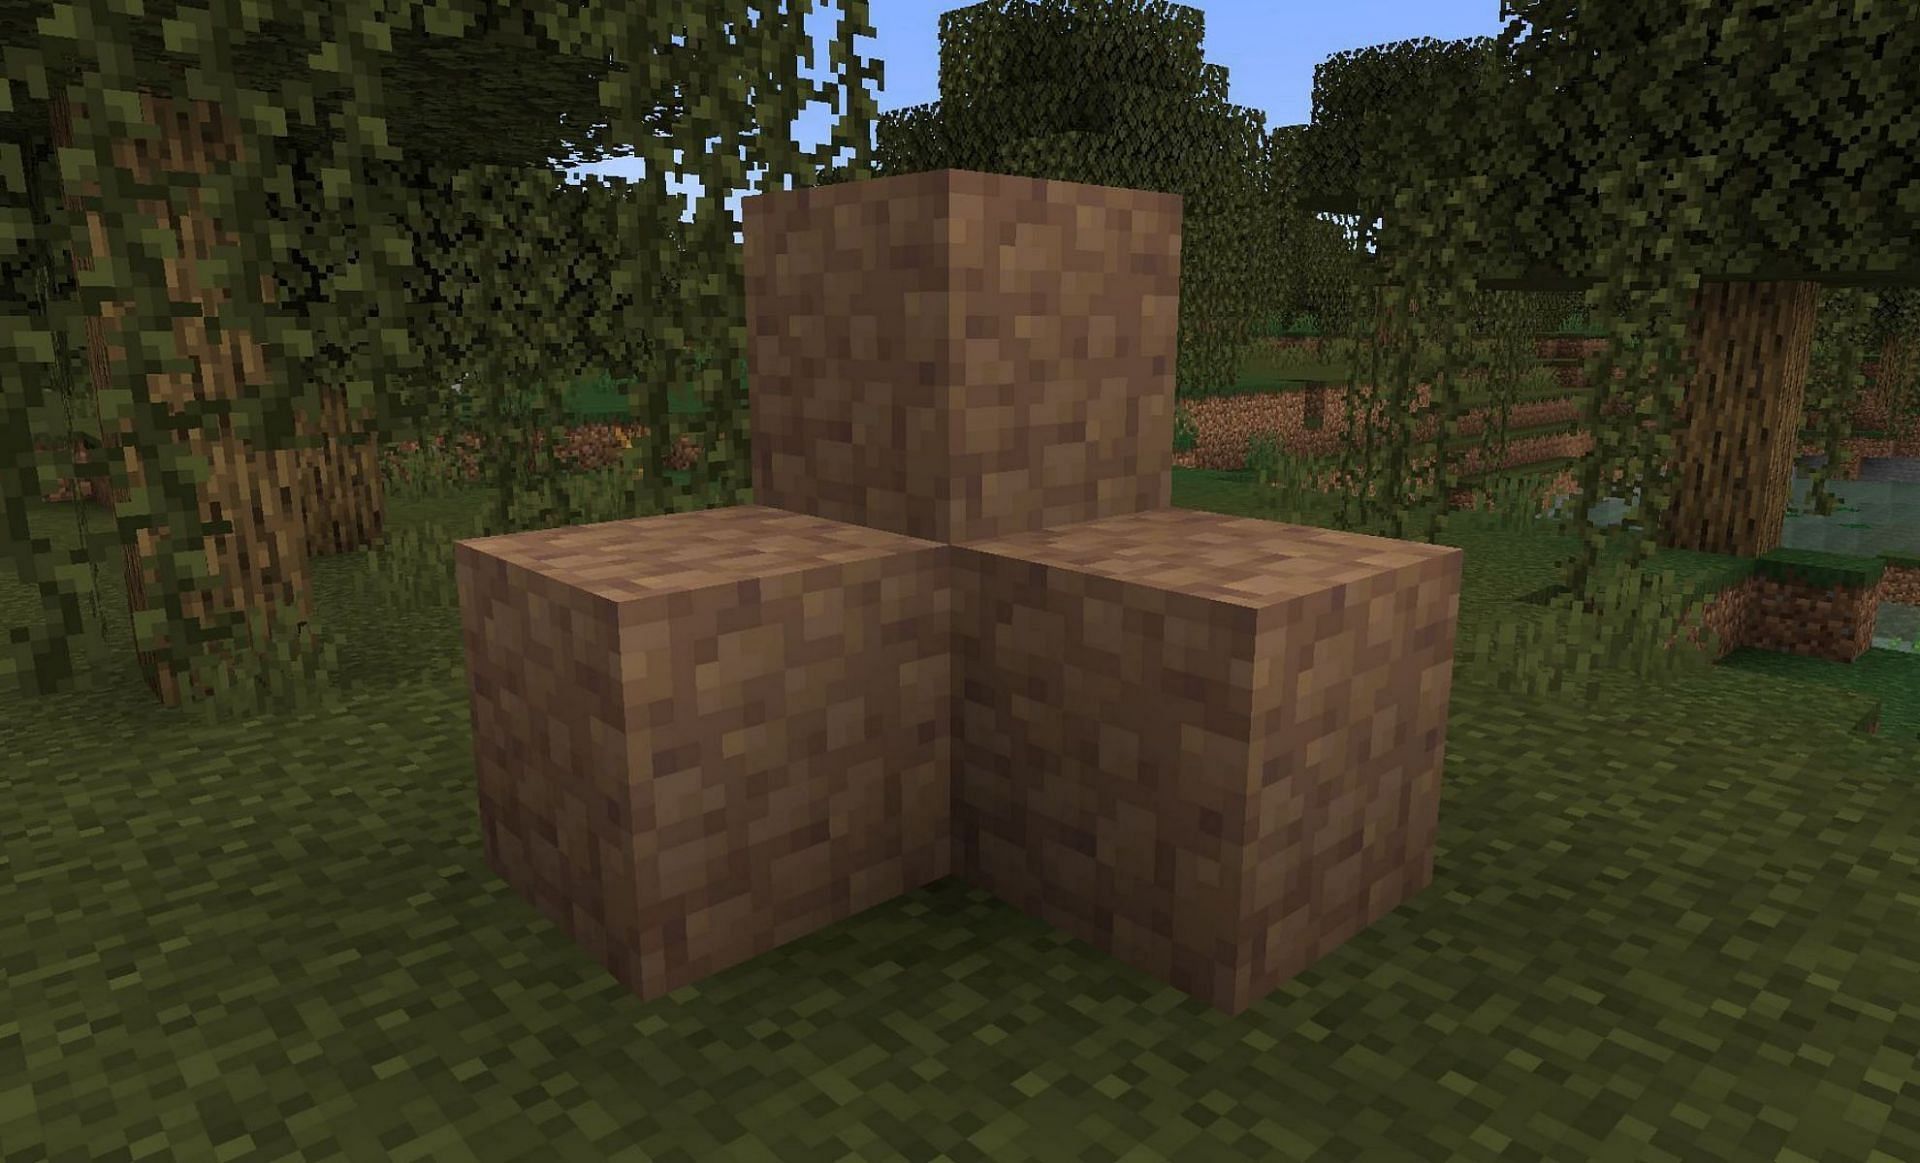 Mud blocks in new update (Image via Mojang)